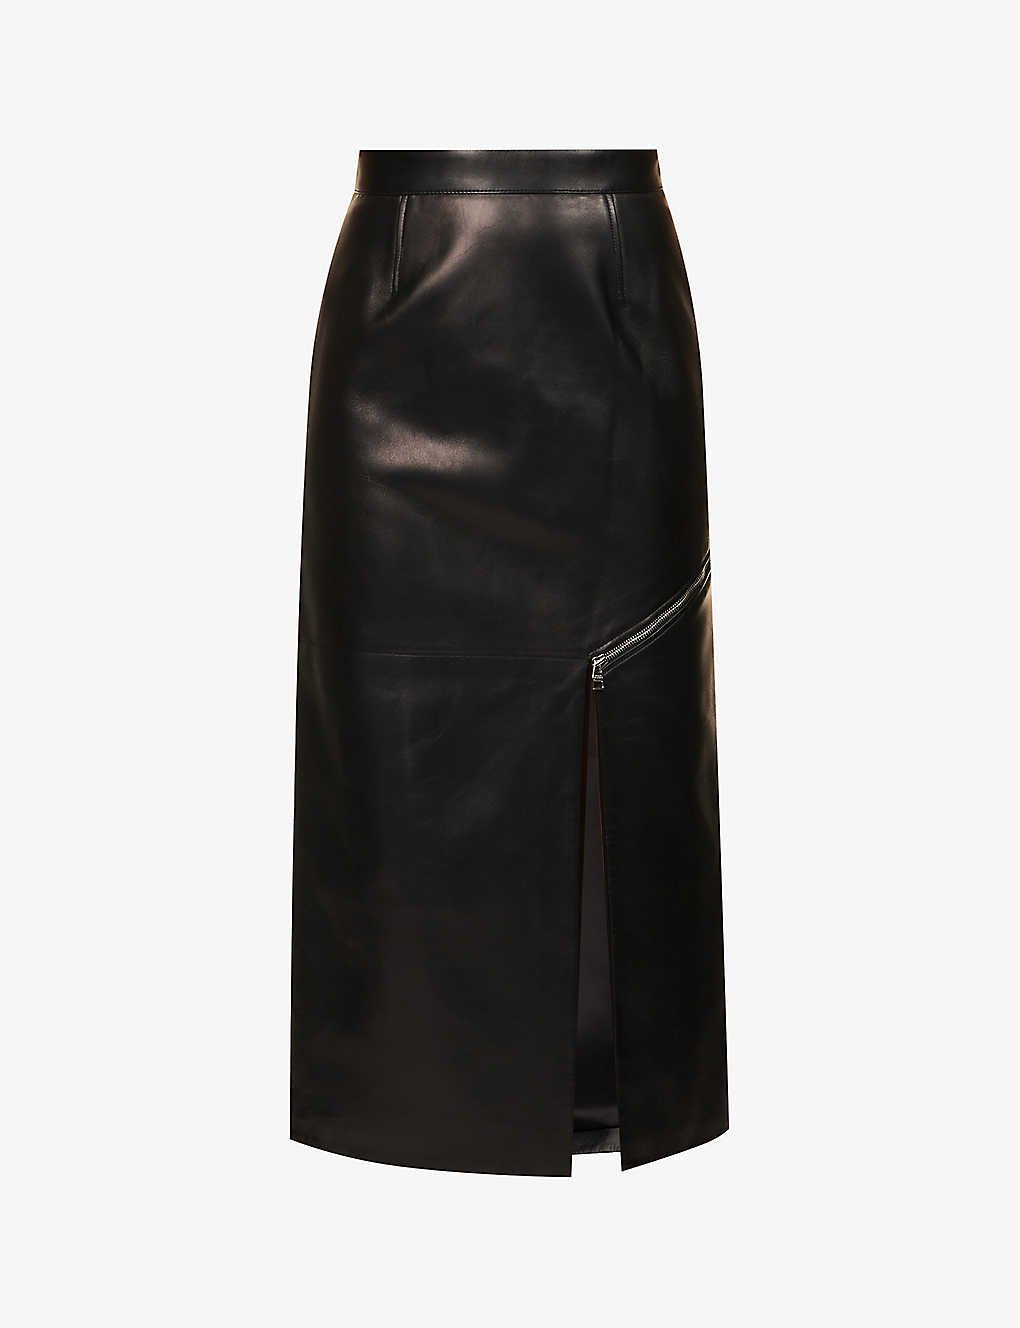 Black Leather Wrap Midi Skirt, WHISTLES